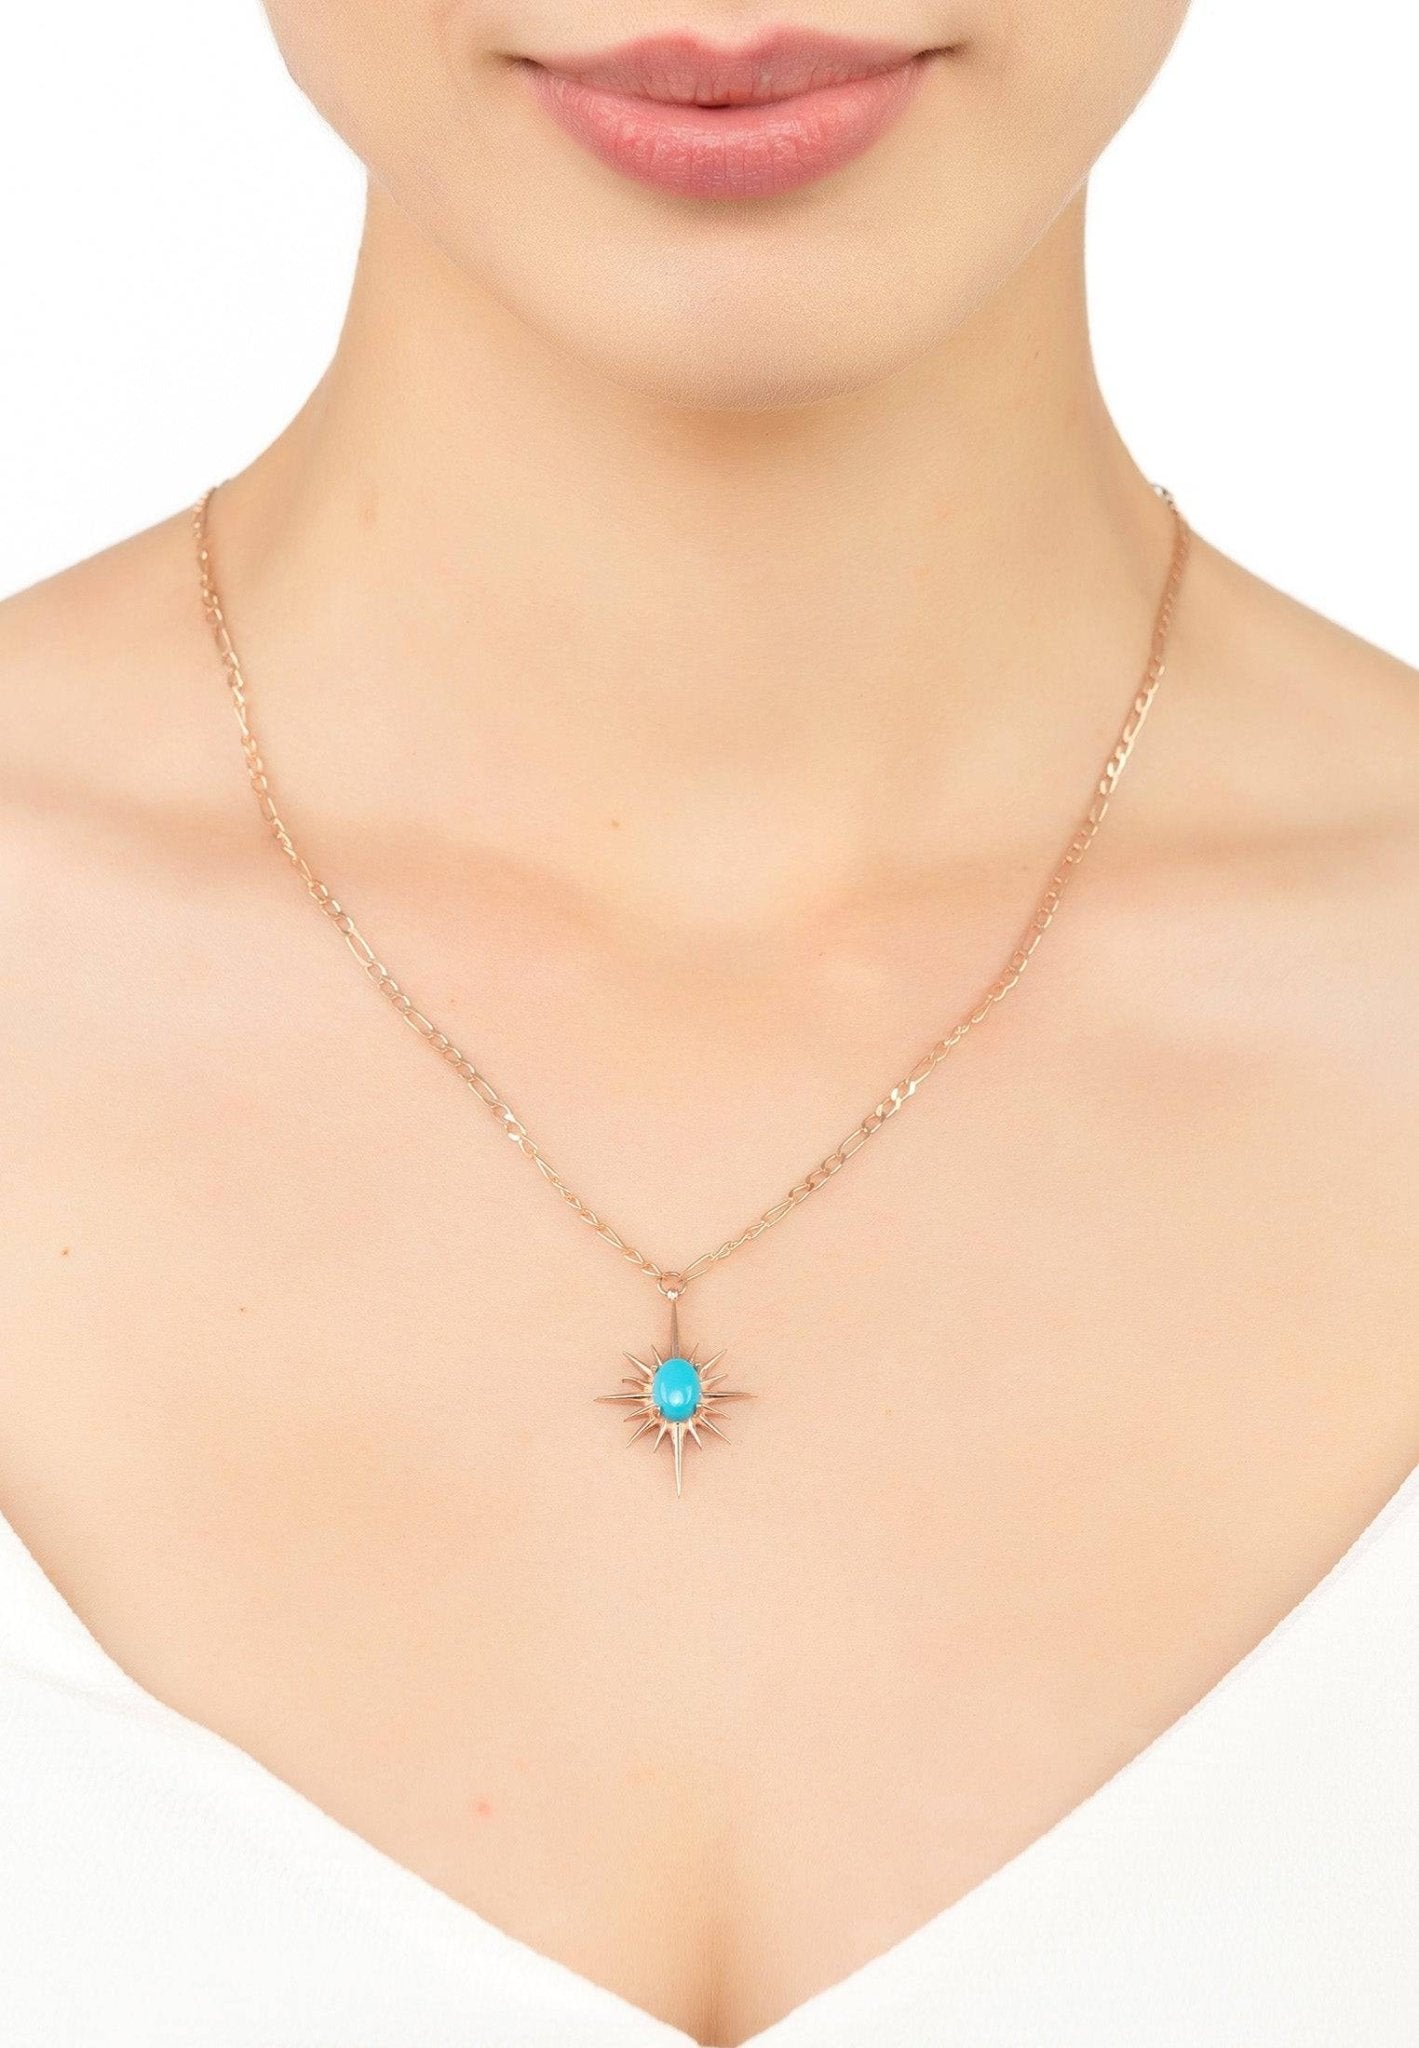 Sunburst Turquoise Necklace Rosegold - LATELITA Necklaces